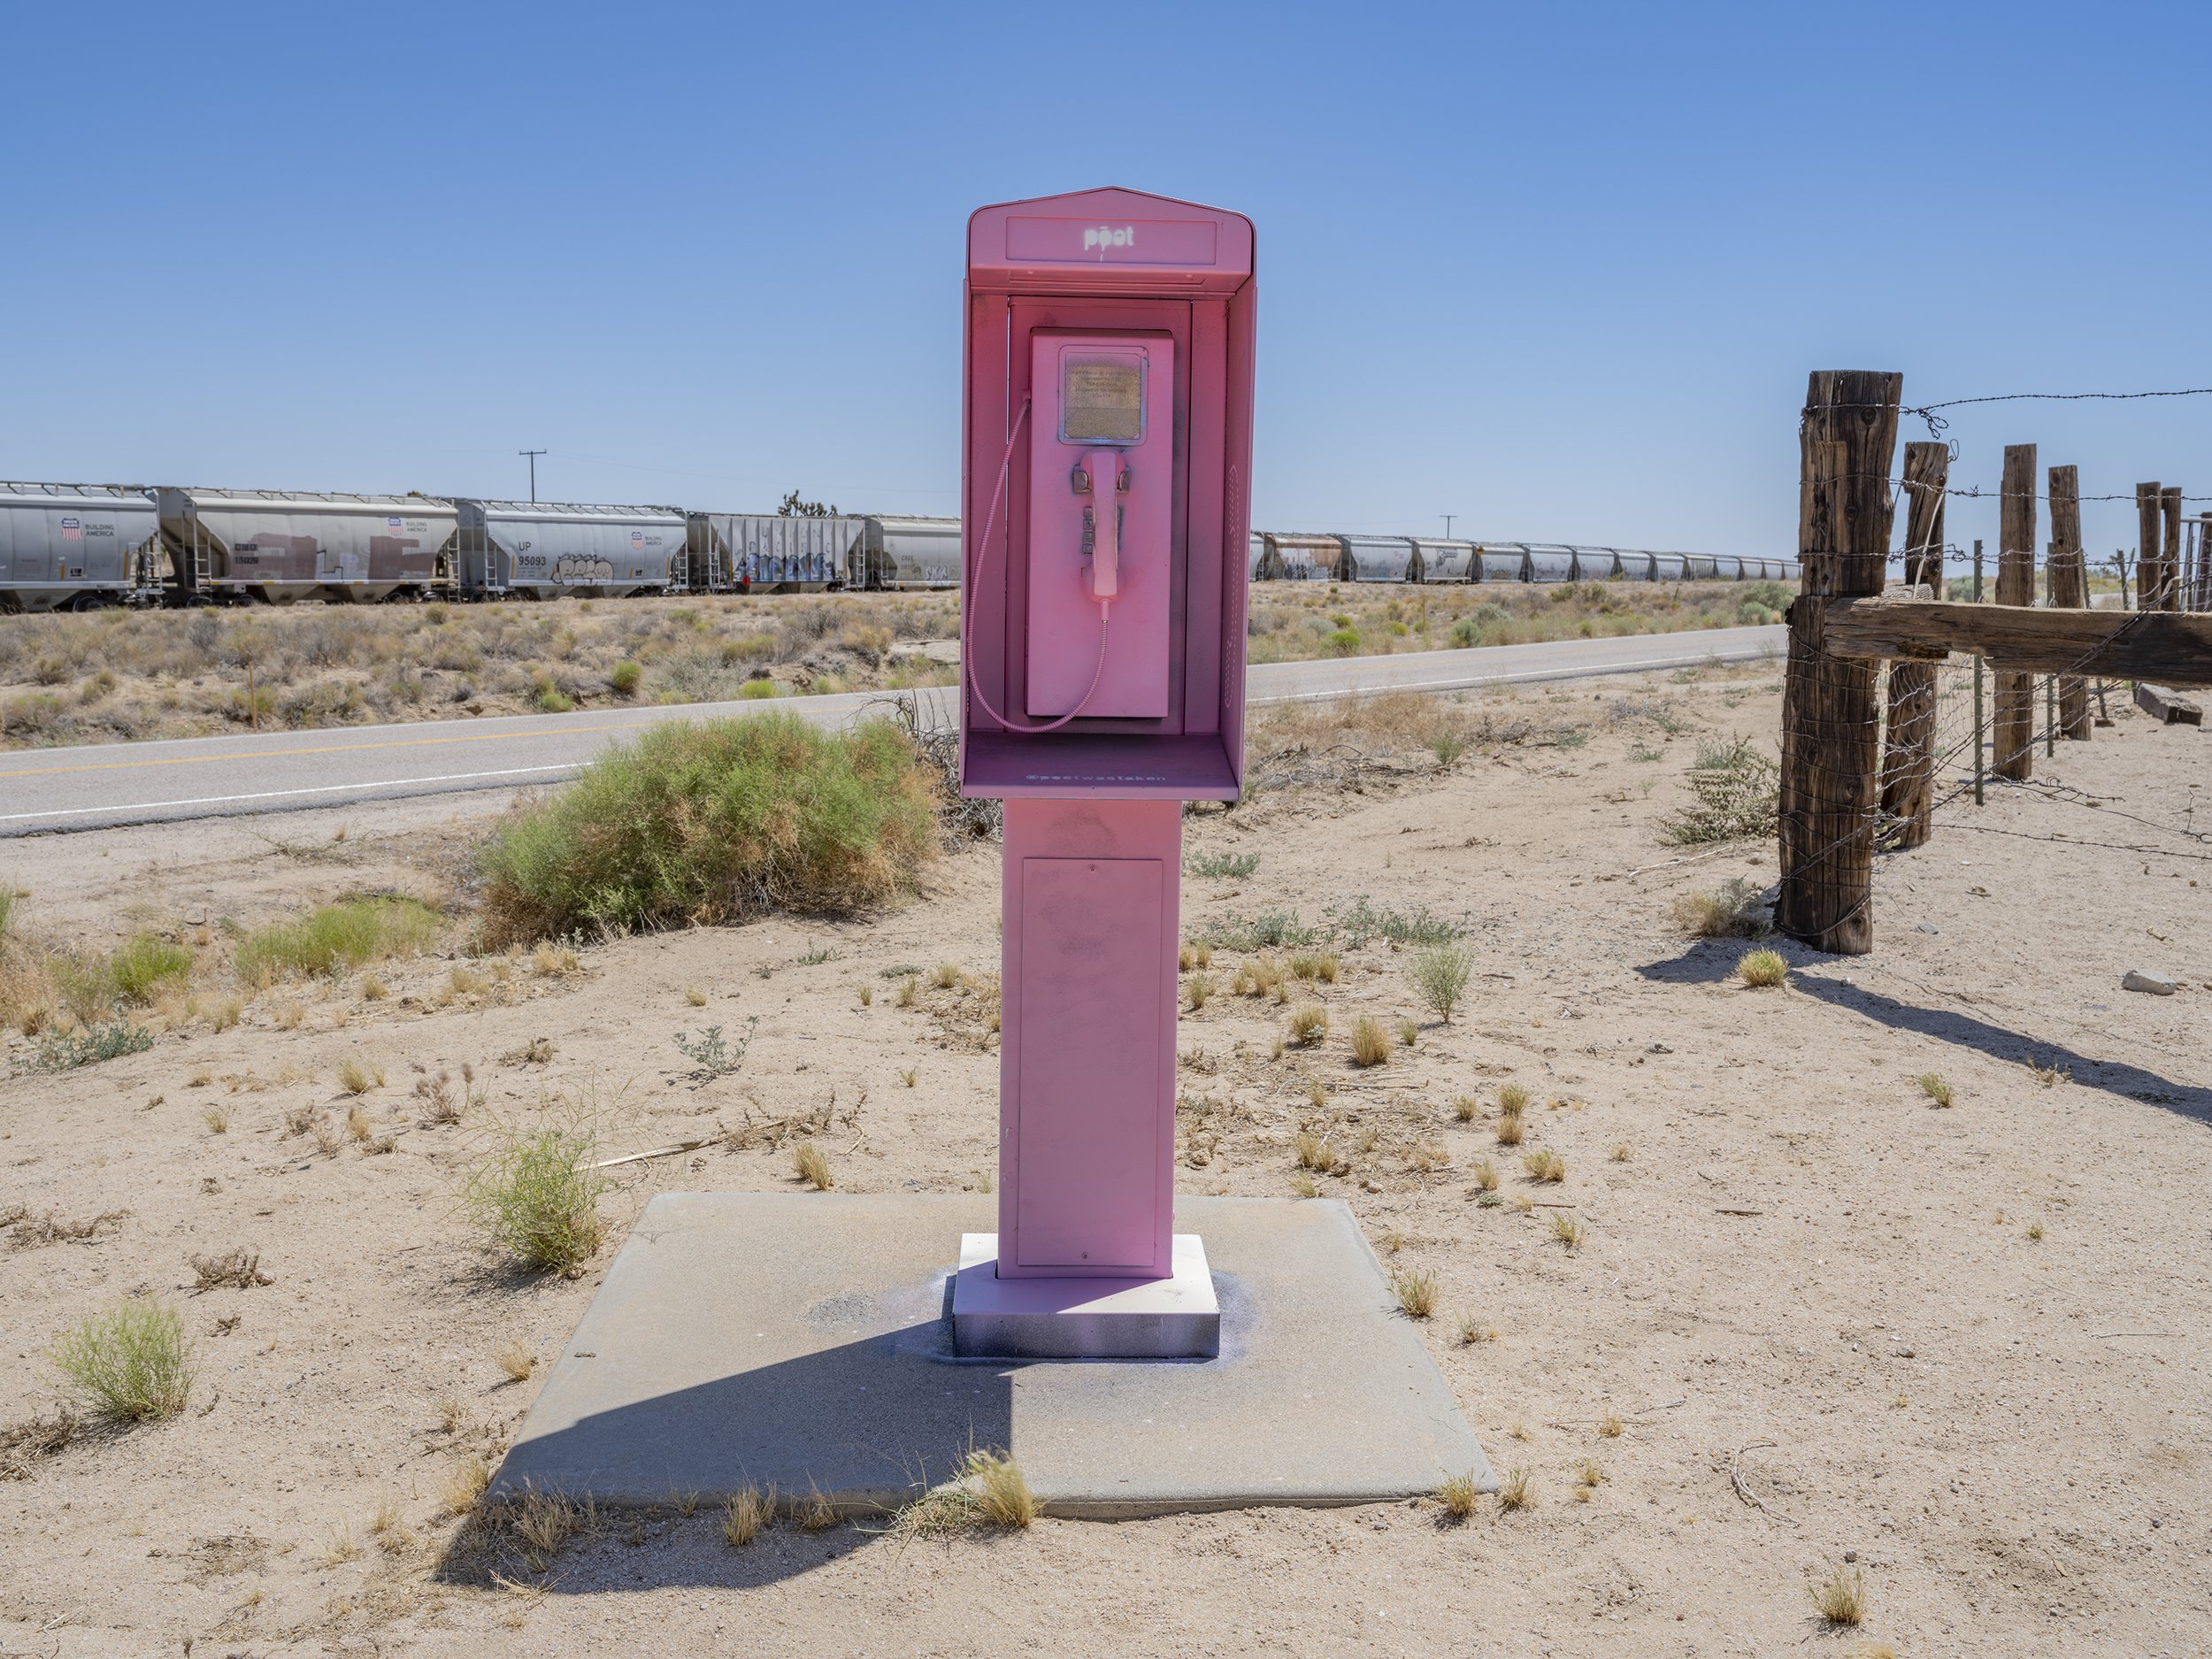  Pink Phone. Cima, California. June 12, 2022 